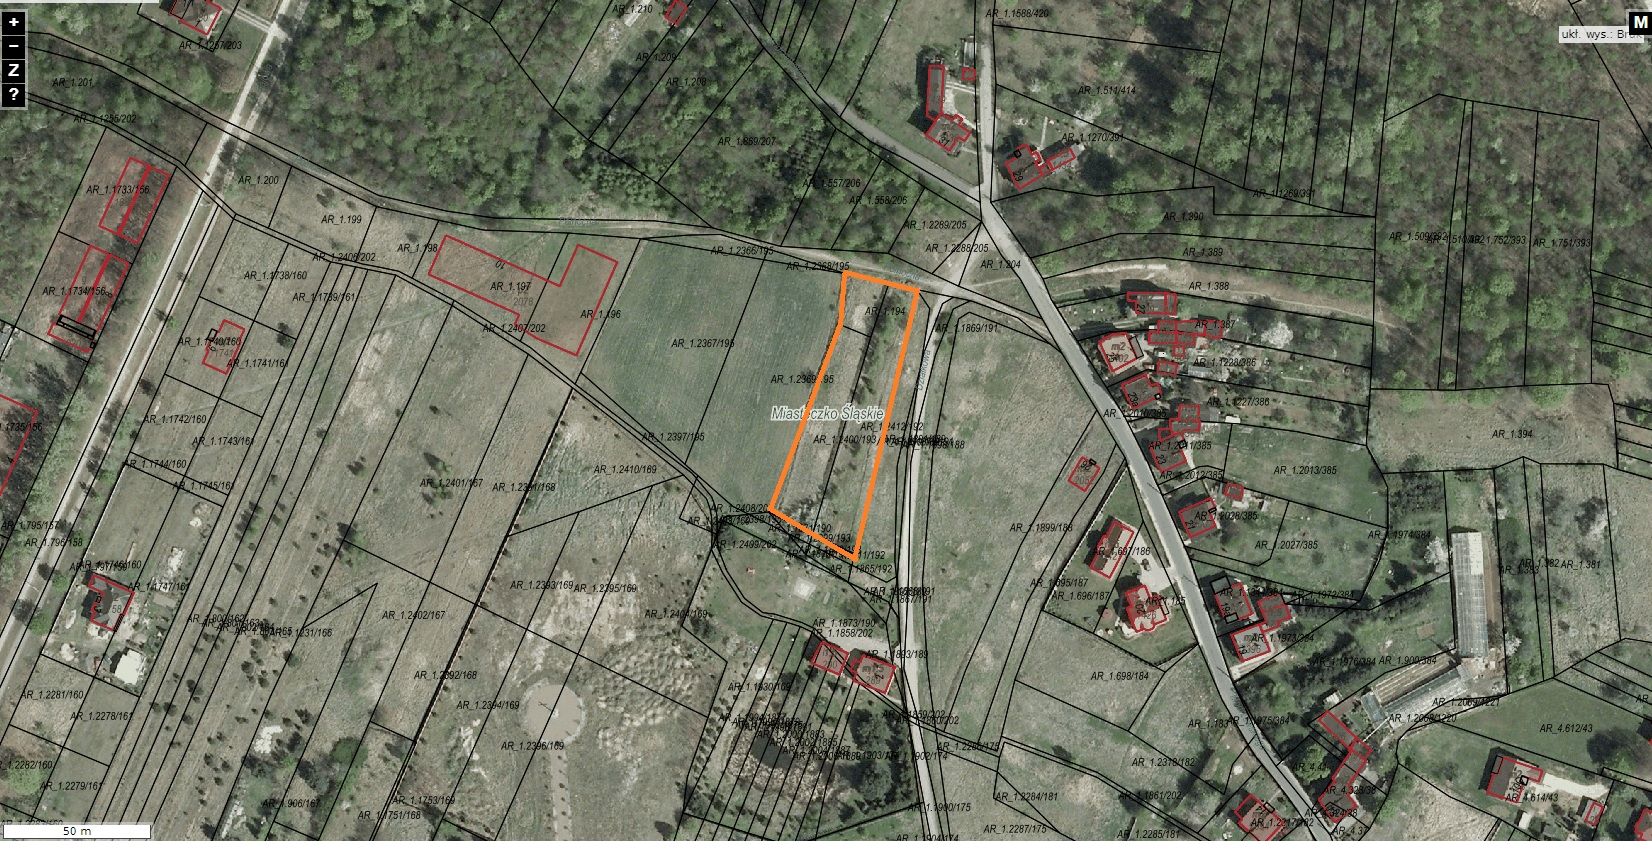 Ogłoszenie Burmistrza Miasta Miasteczko Śląskie o pierwszym przetargu ustnym nieograniczonym na sprzedaż nieruchomości niezabudowanej położonej w rejonie ul. Północnej